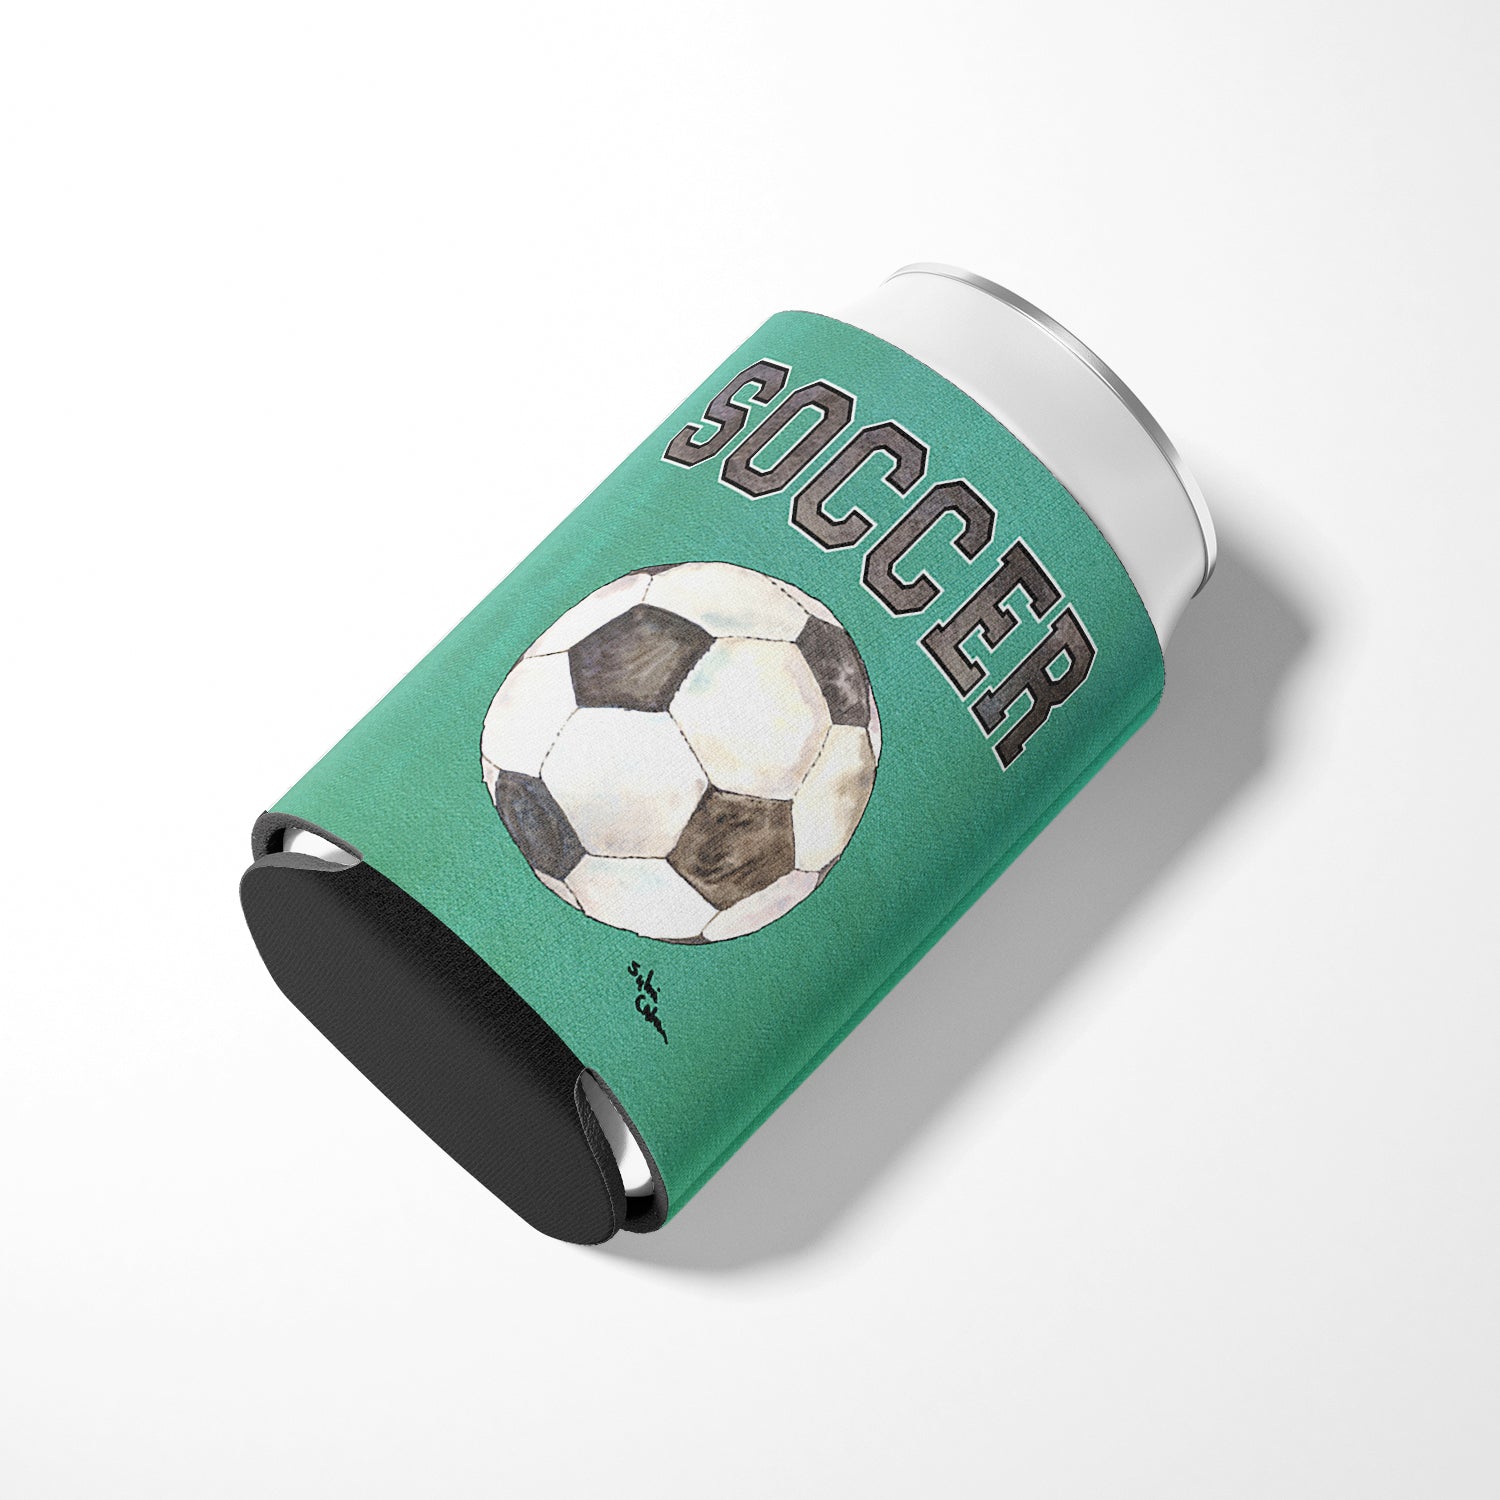 Isolateur pour canettes ou bouteilles de soccer